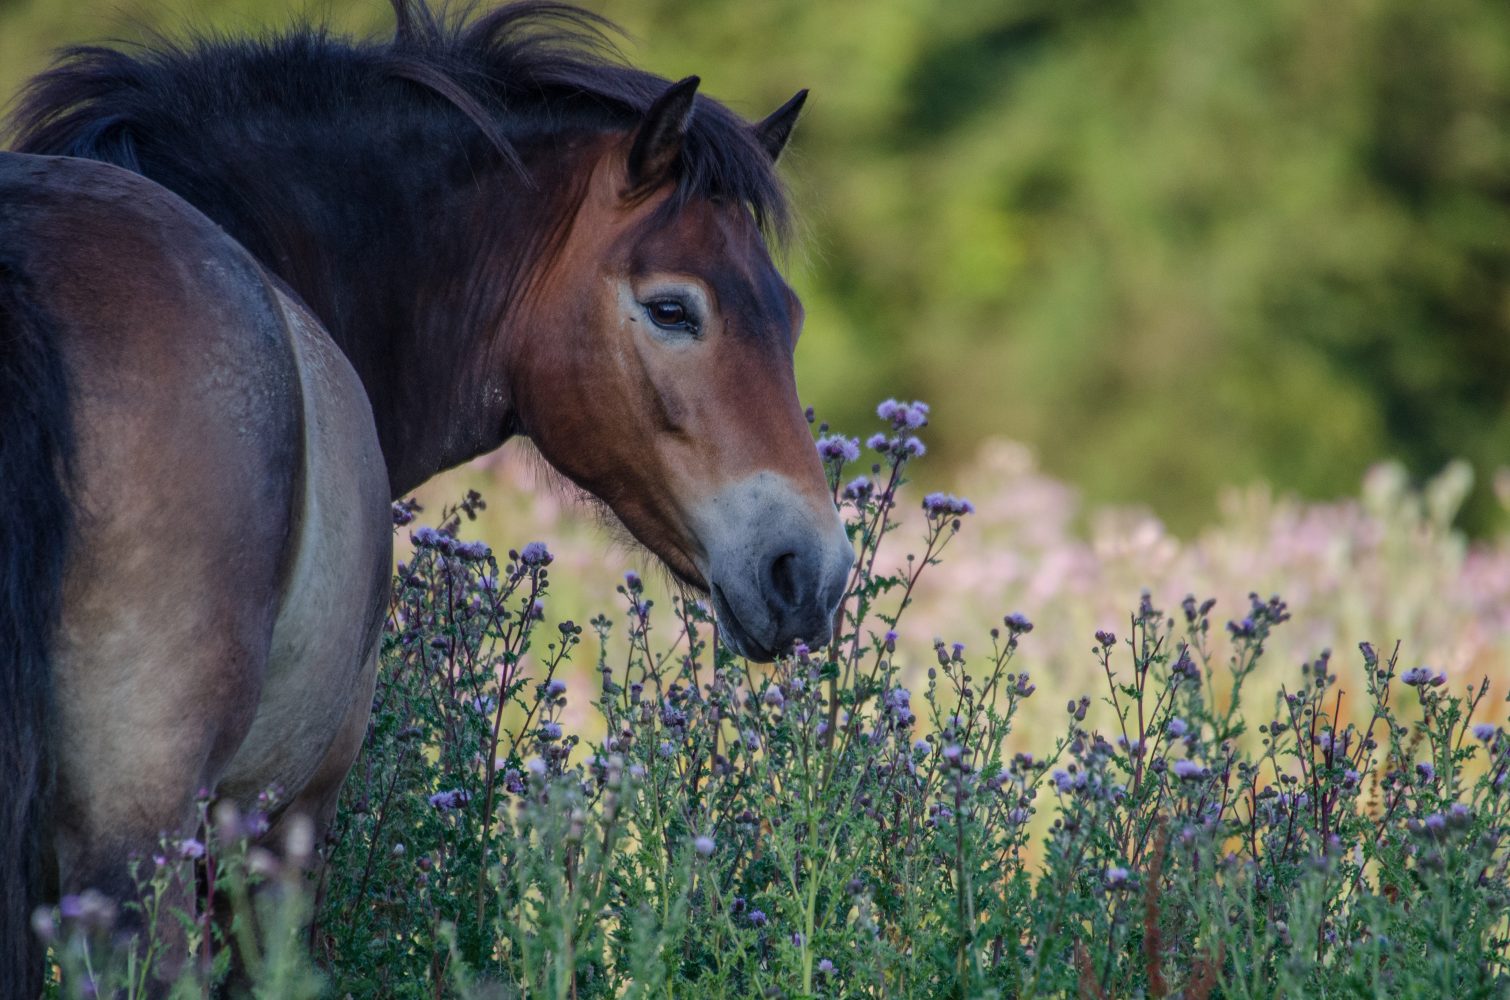 Horse in wild flowers at Knepp Estate